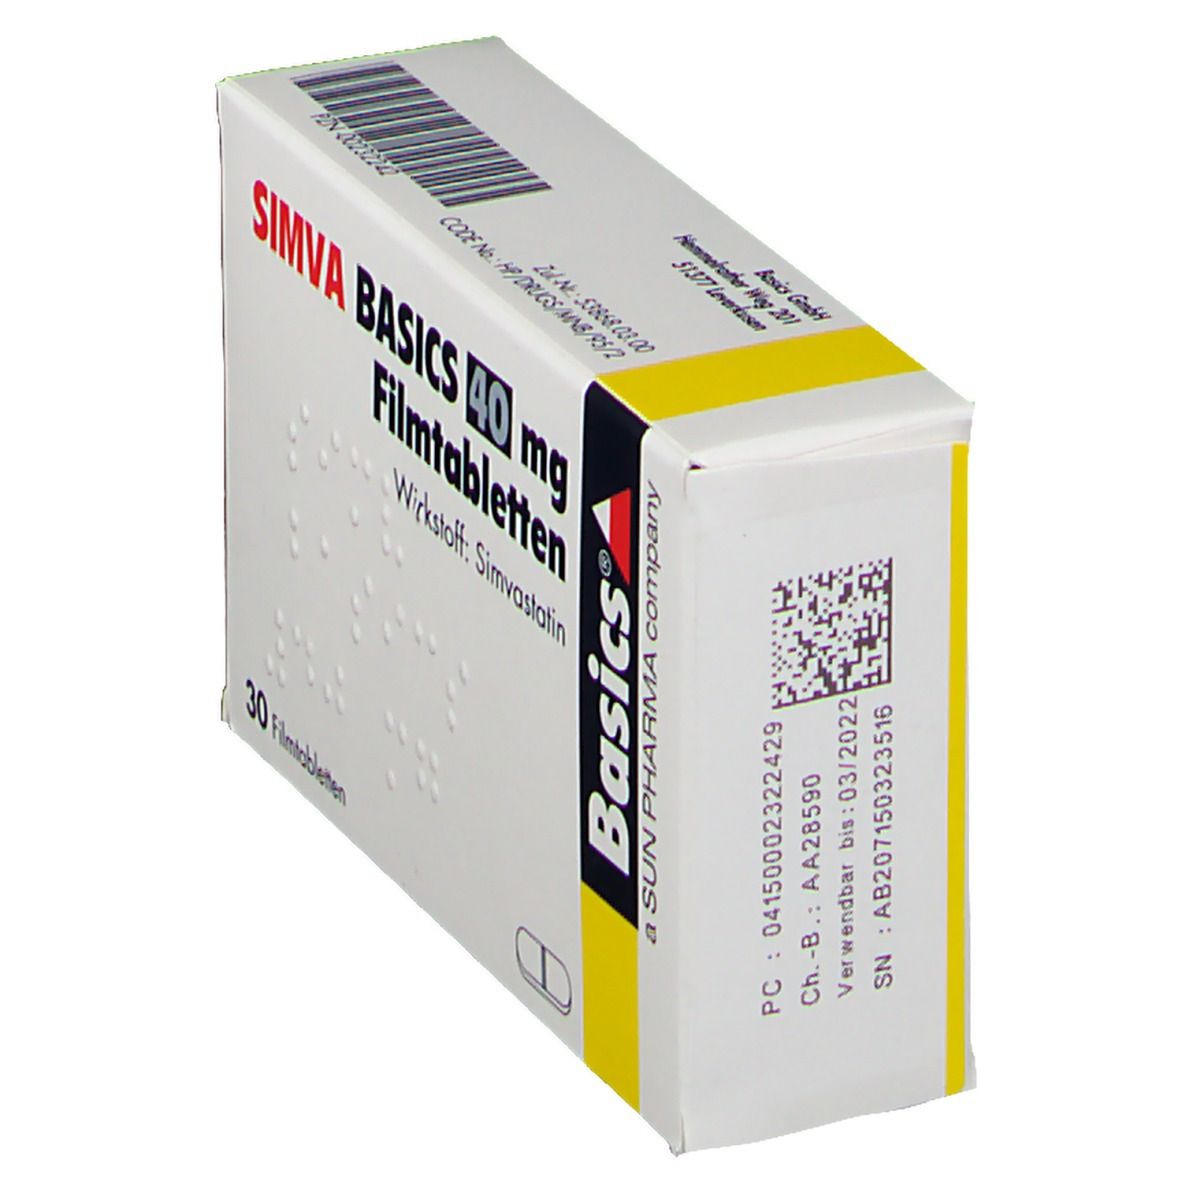 SIMVA BASICS 40 mg